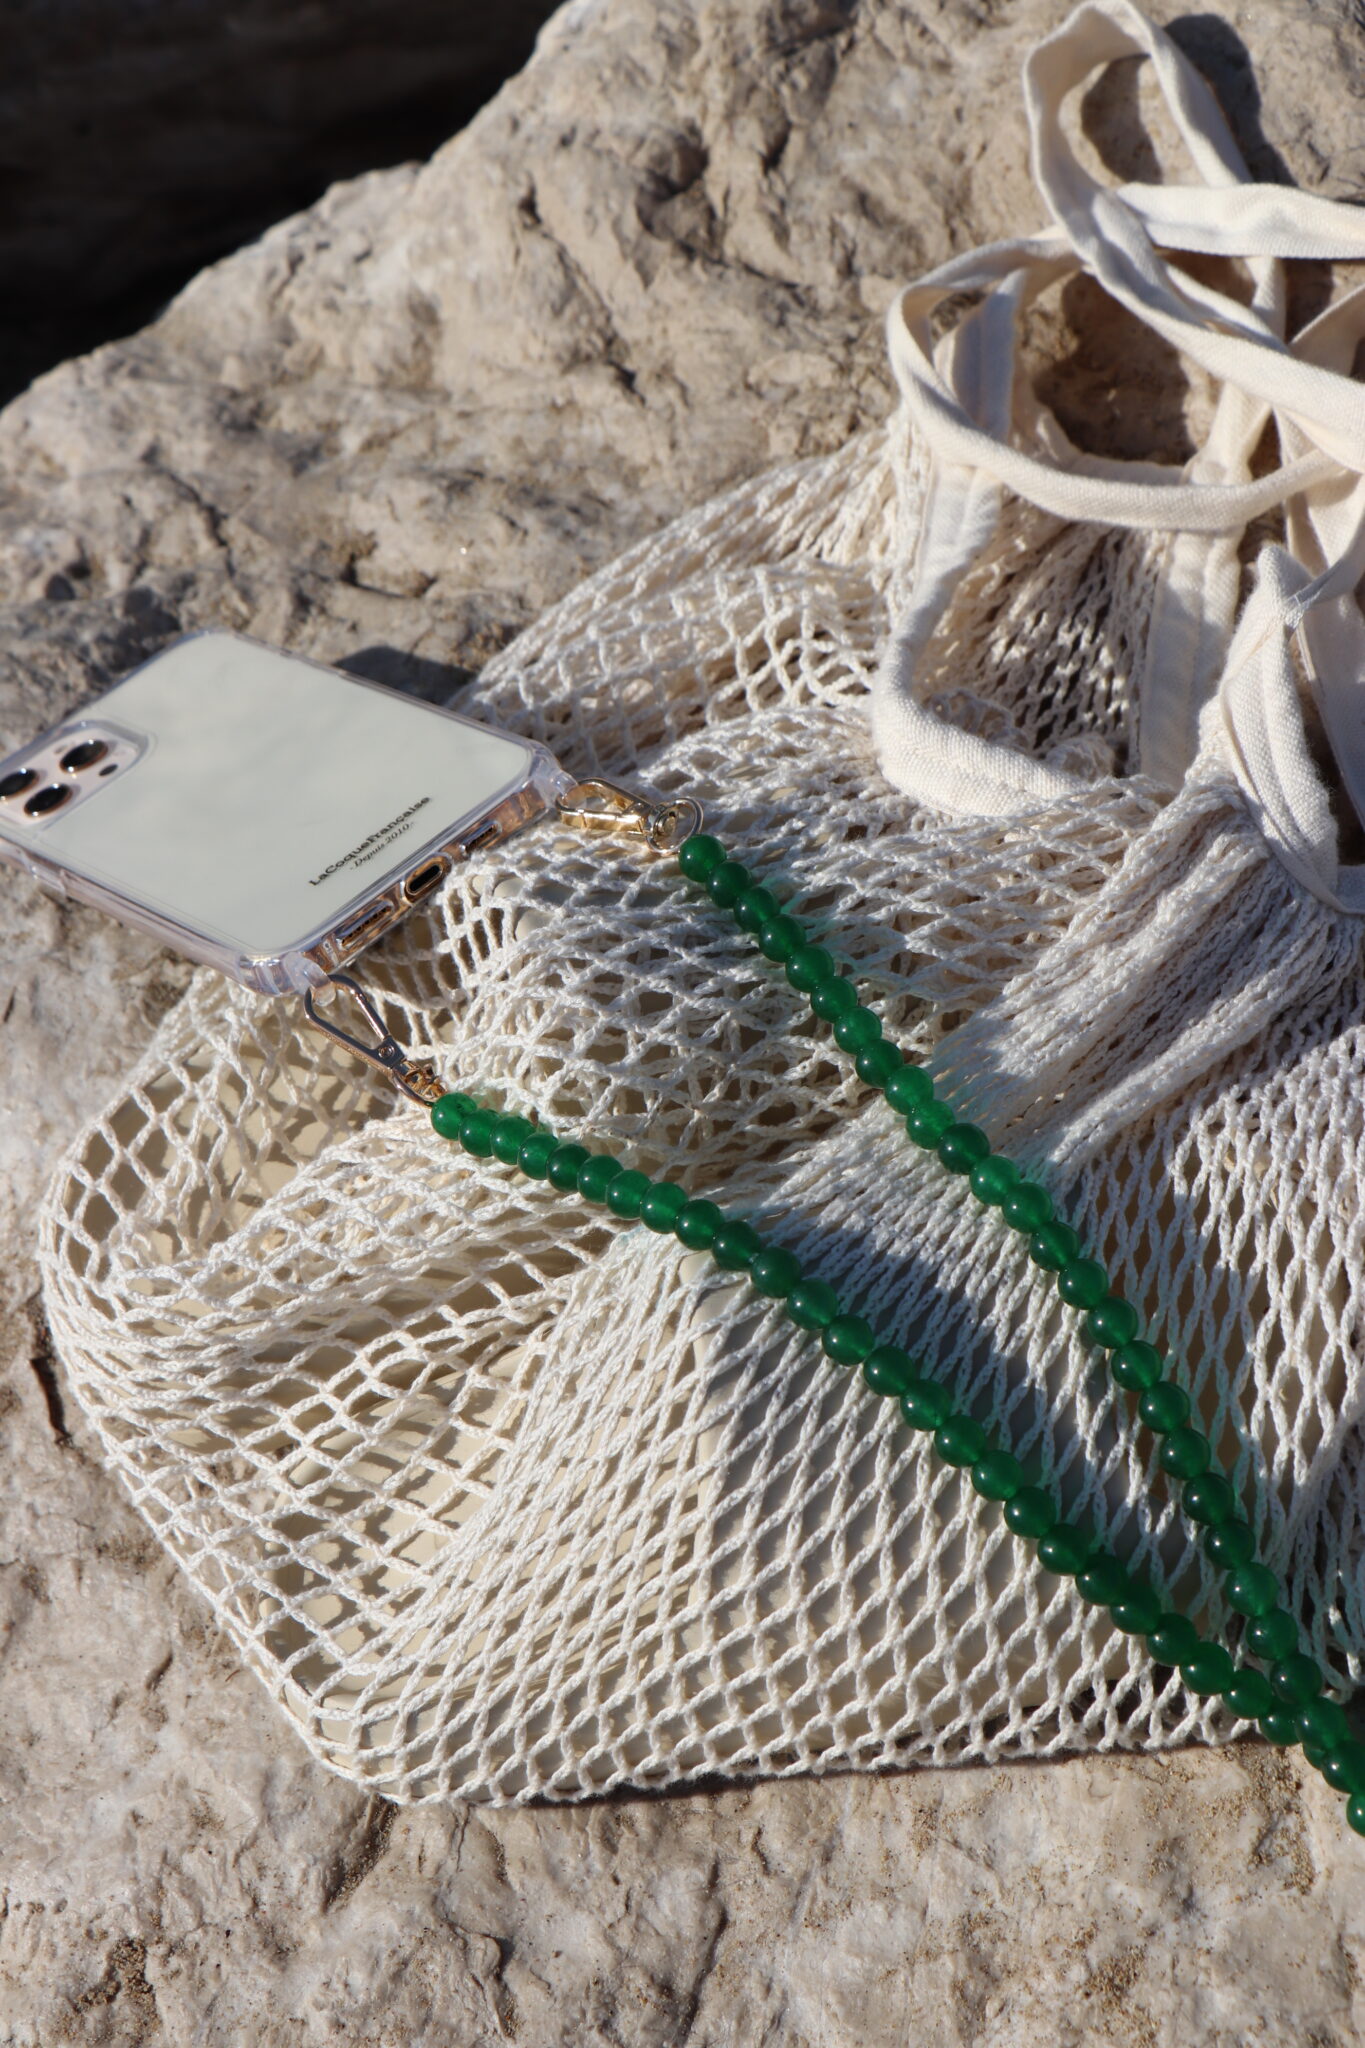 Chaîne de téléphone colorée posée sur un sac filet dans le sable